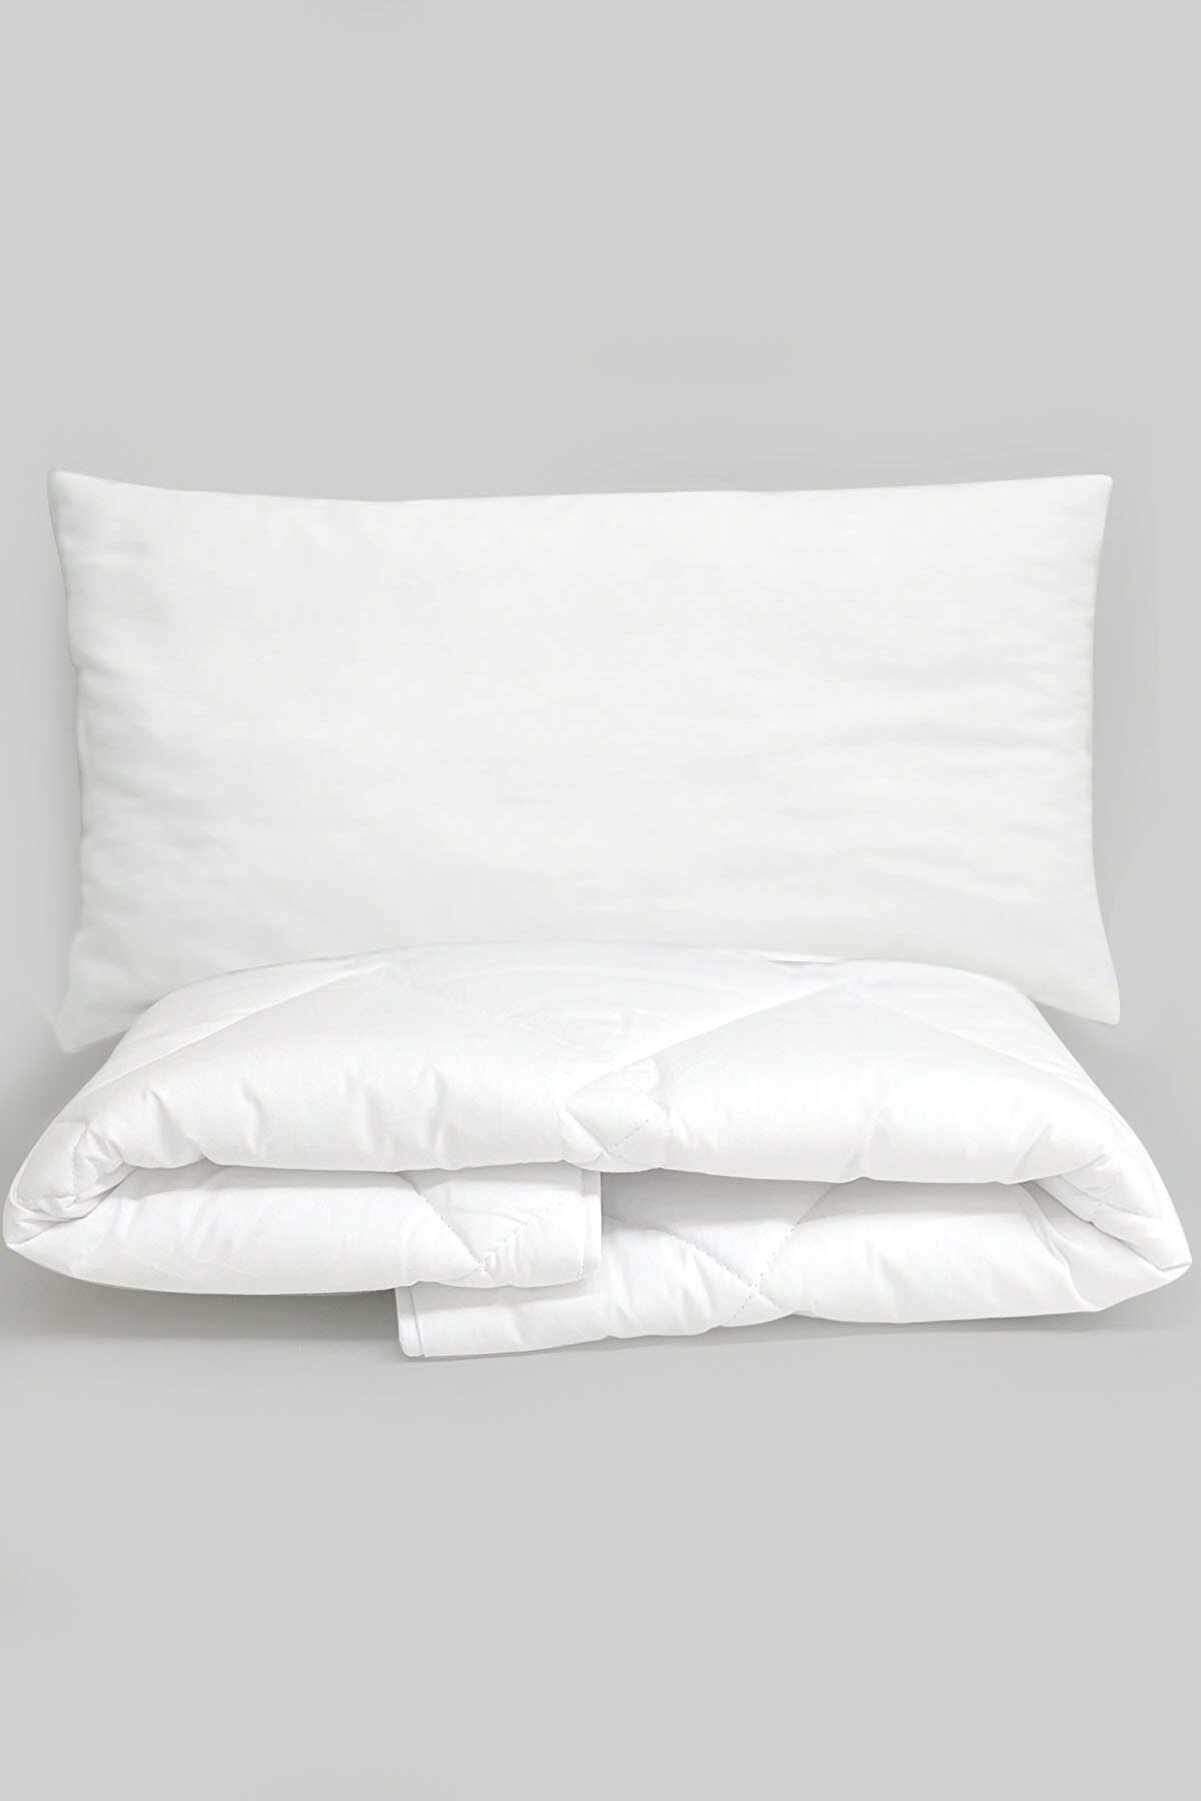 Tuğba Kuğu Anne Yanı Beşik Uyku Seti - Yorgan (55x95) - Yastık (25x45)